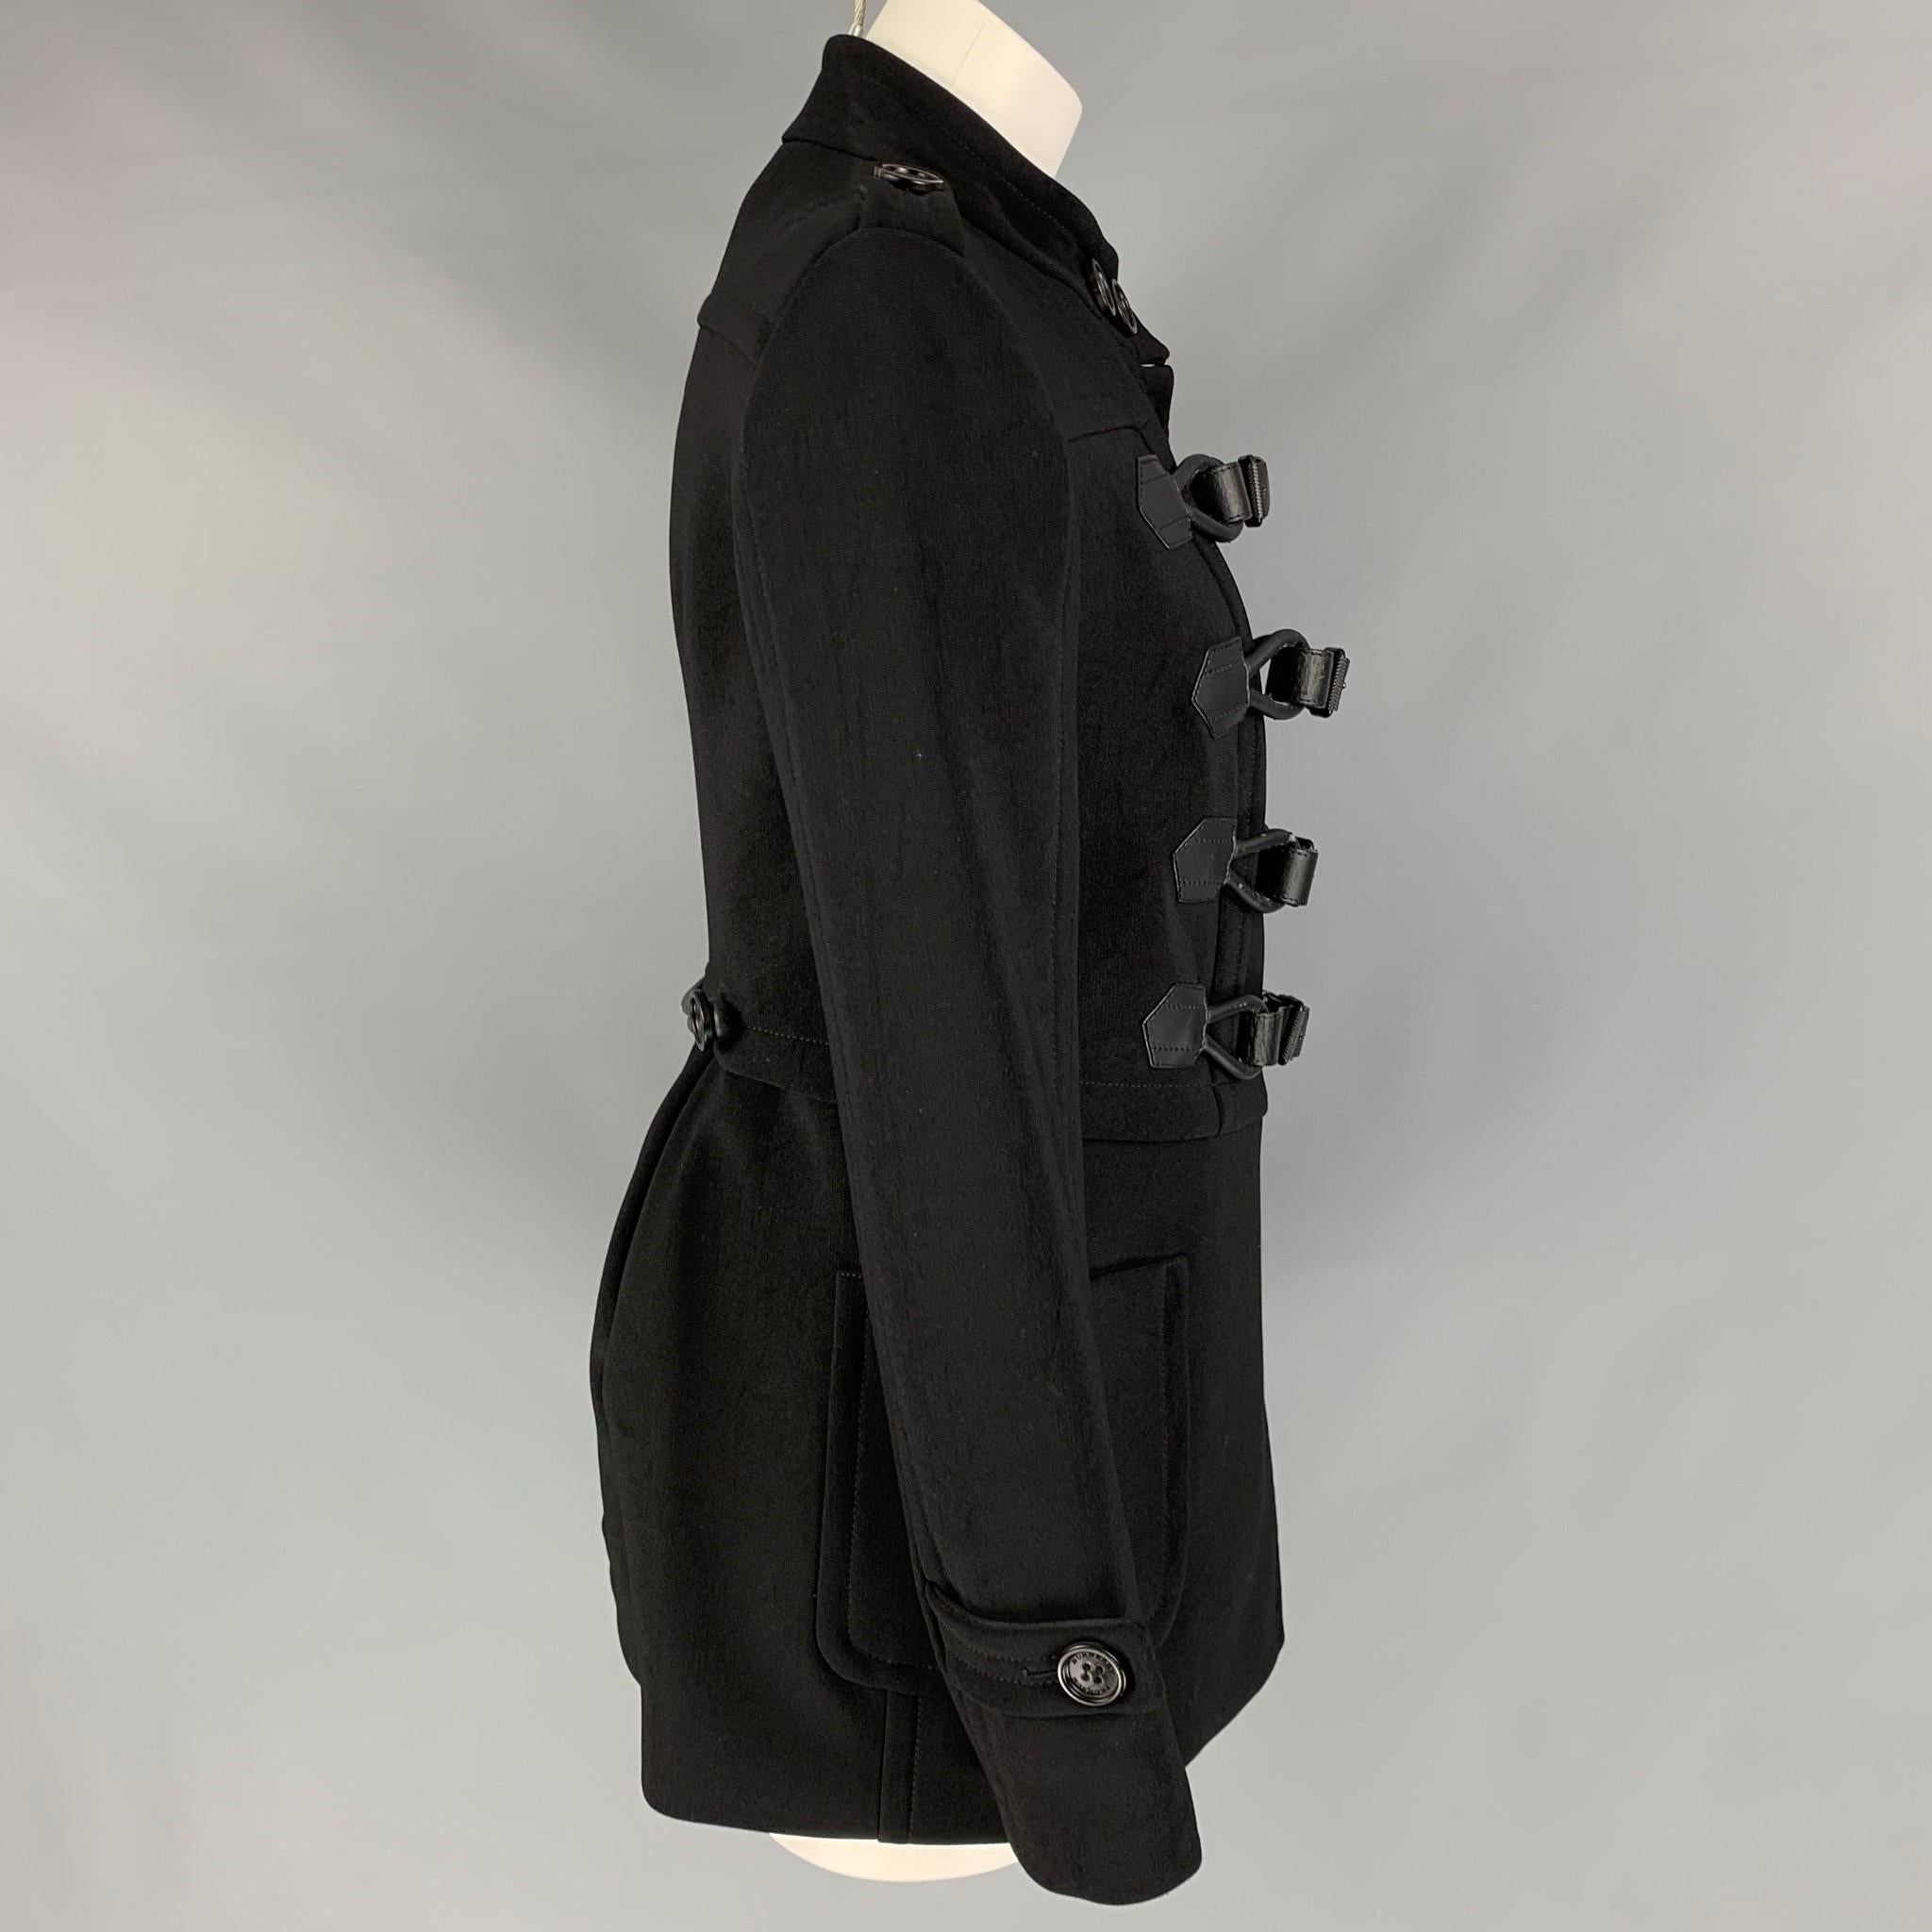 burberry prorsum coat